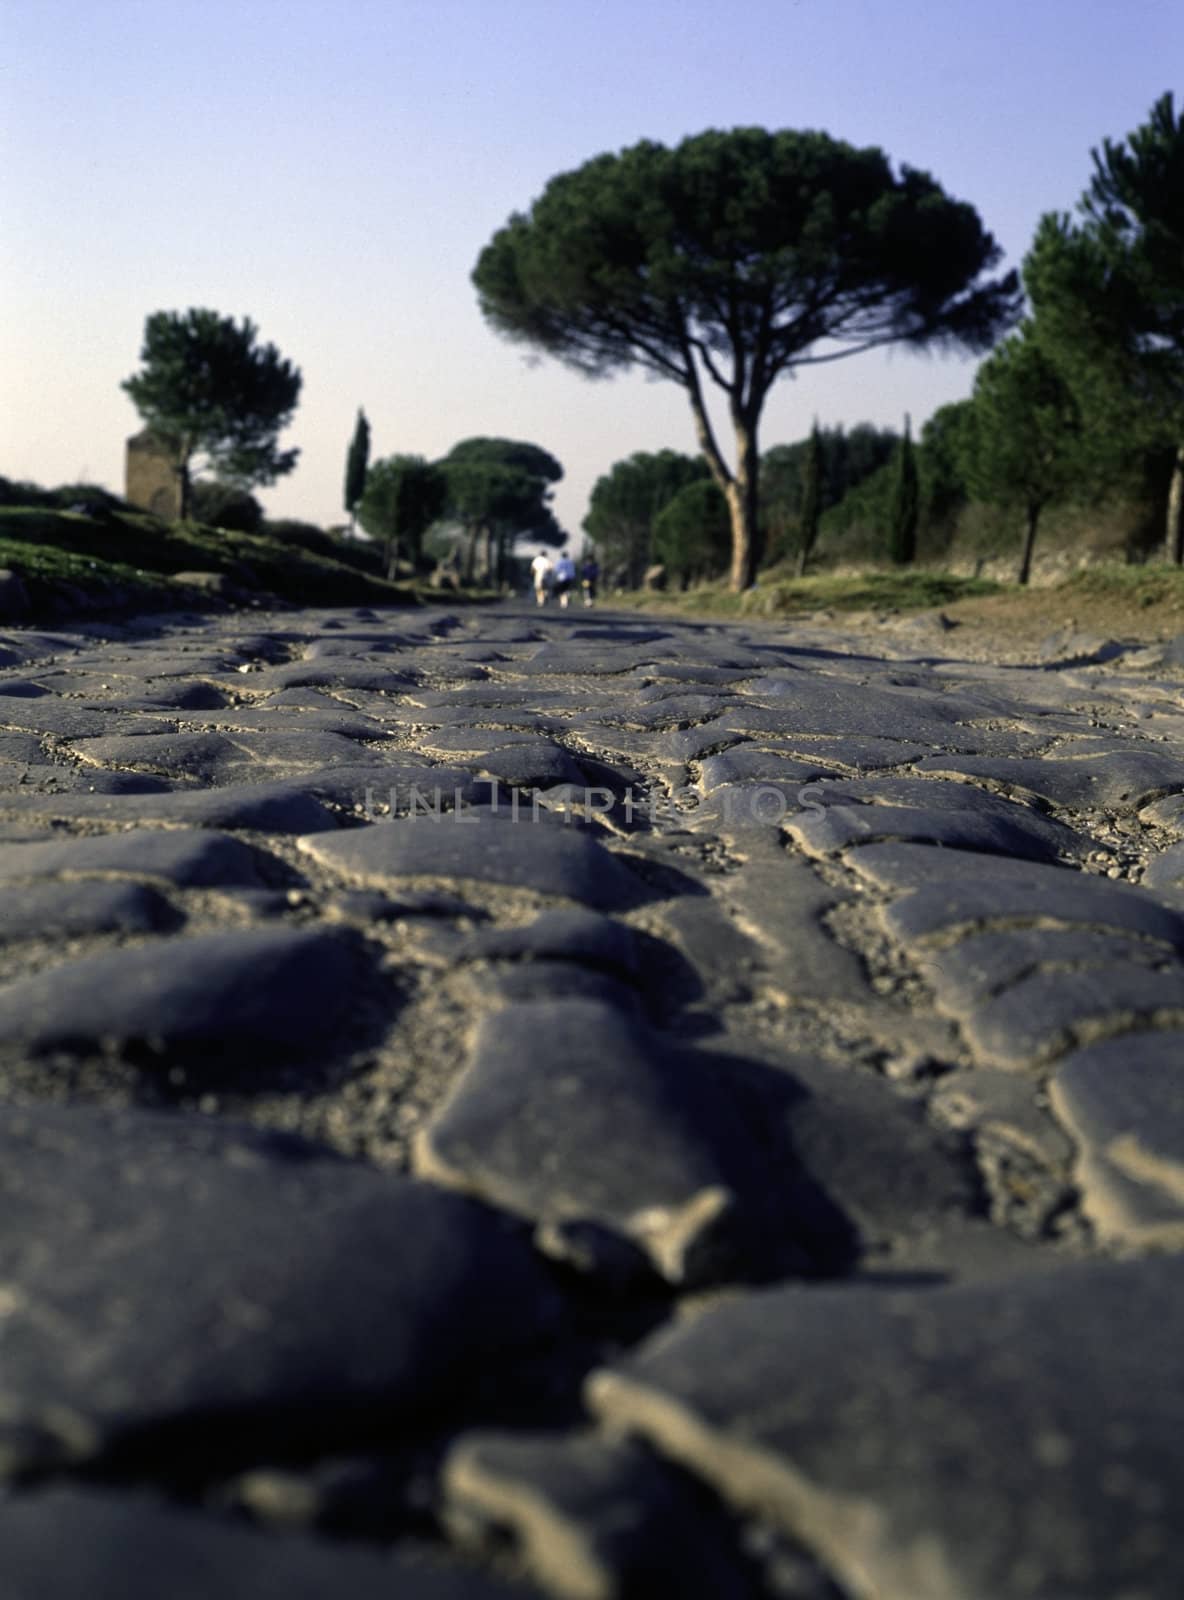 Appian Way, Rome by jol66